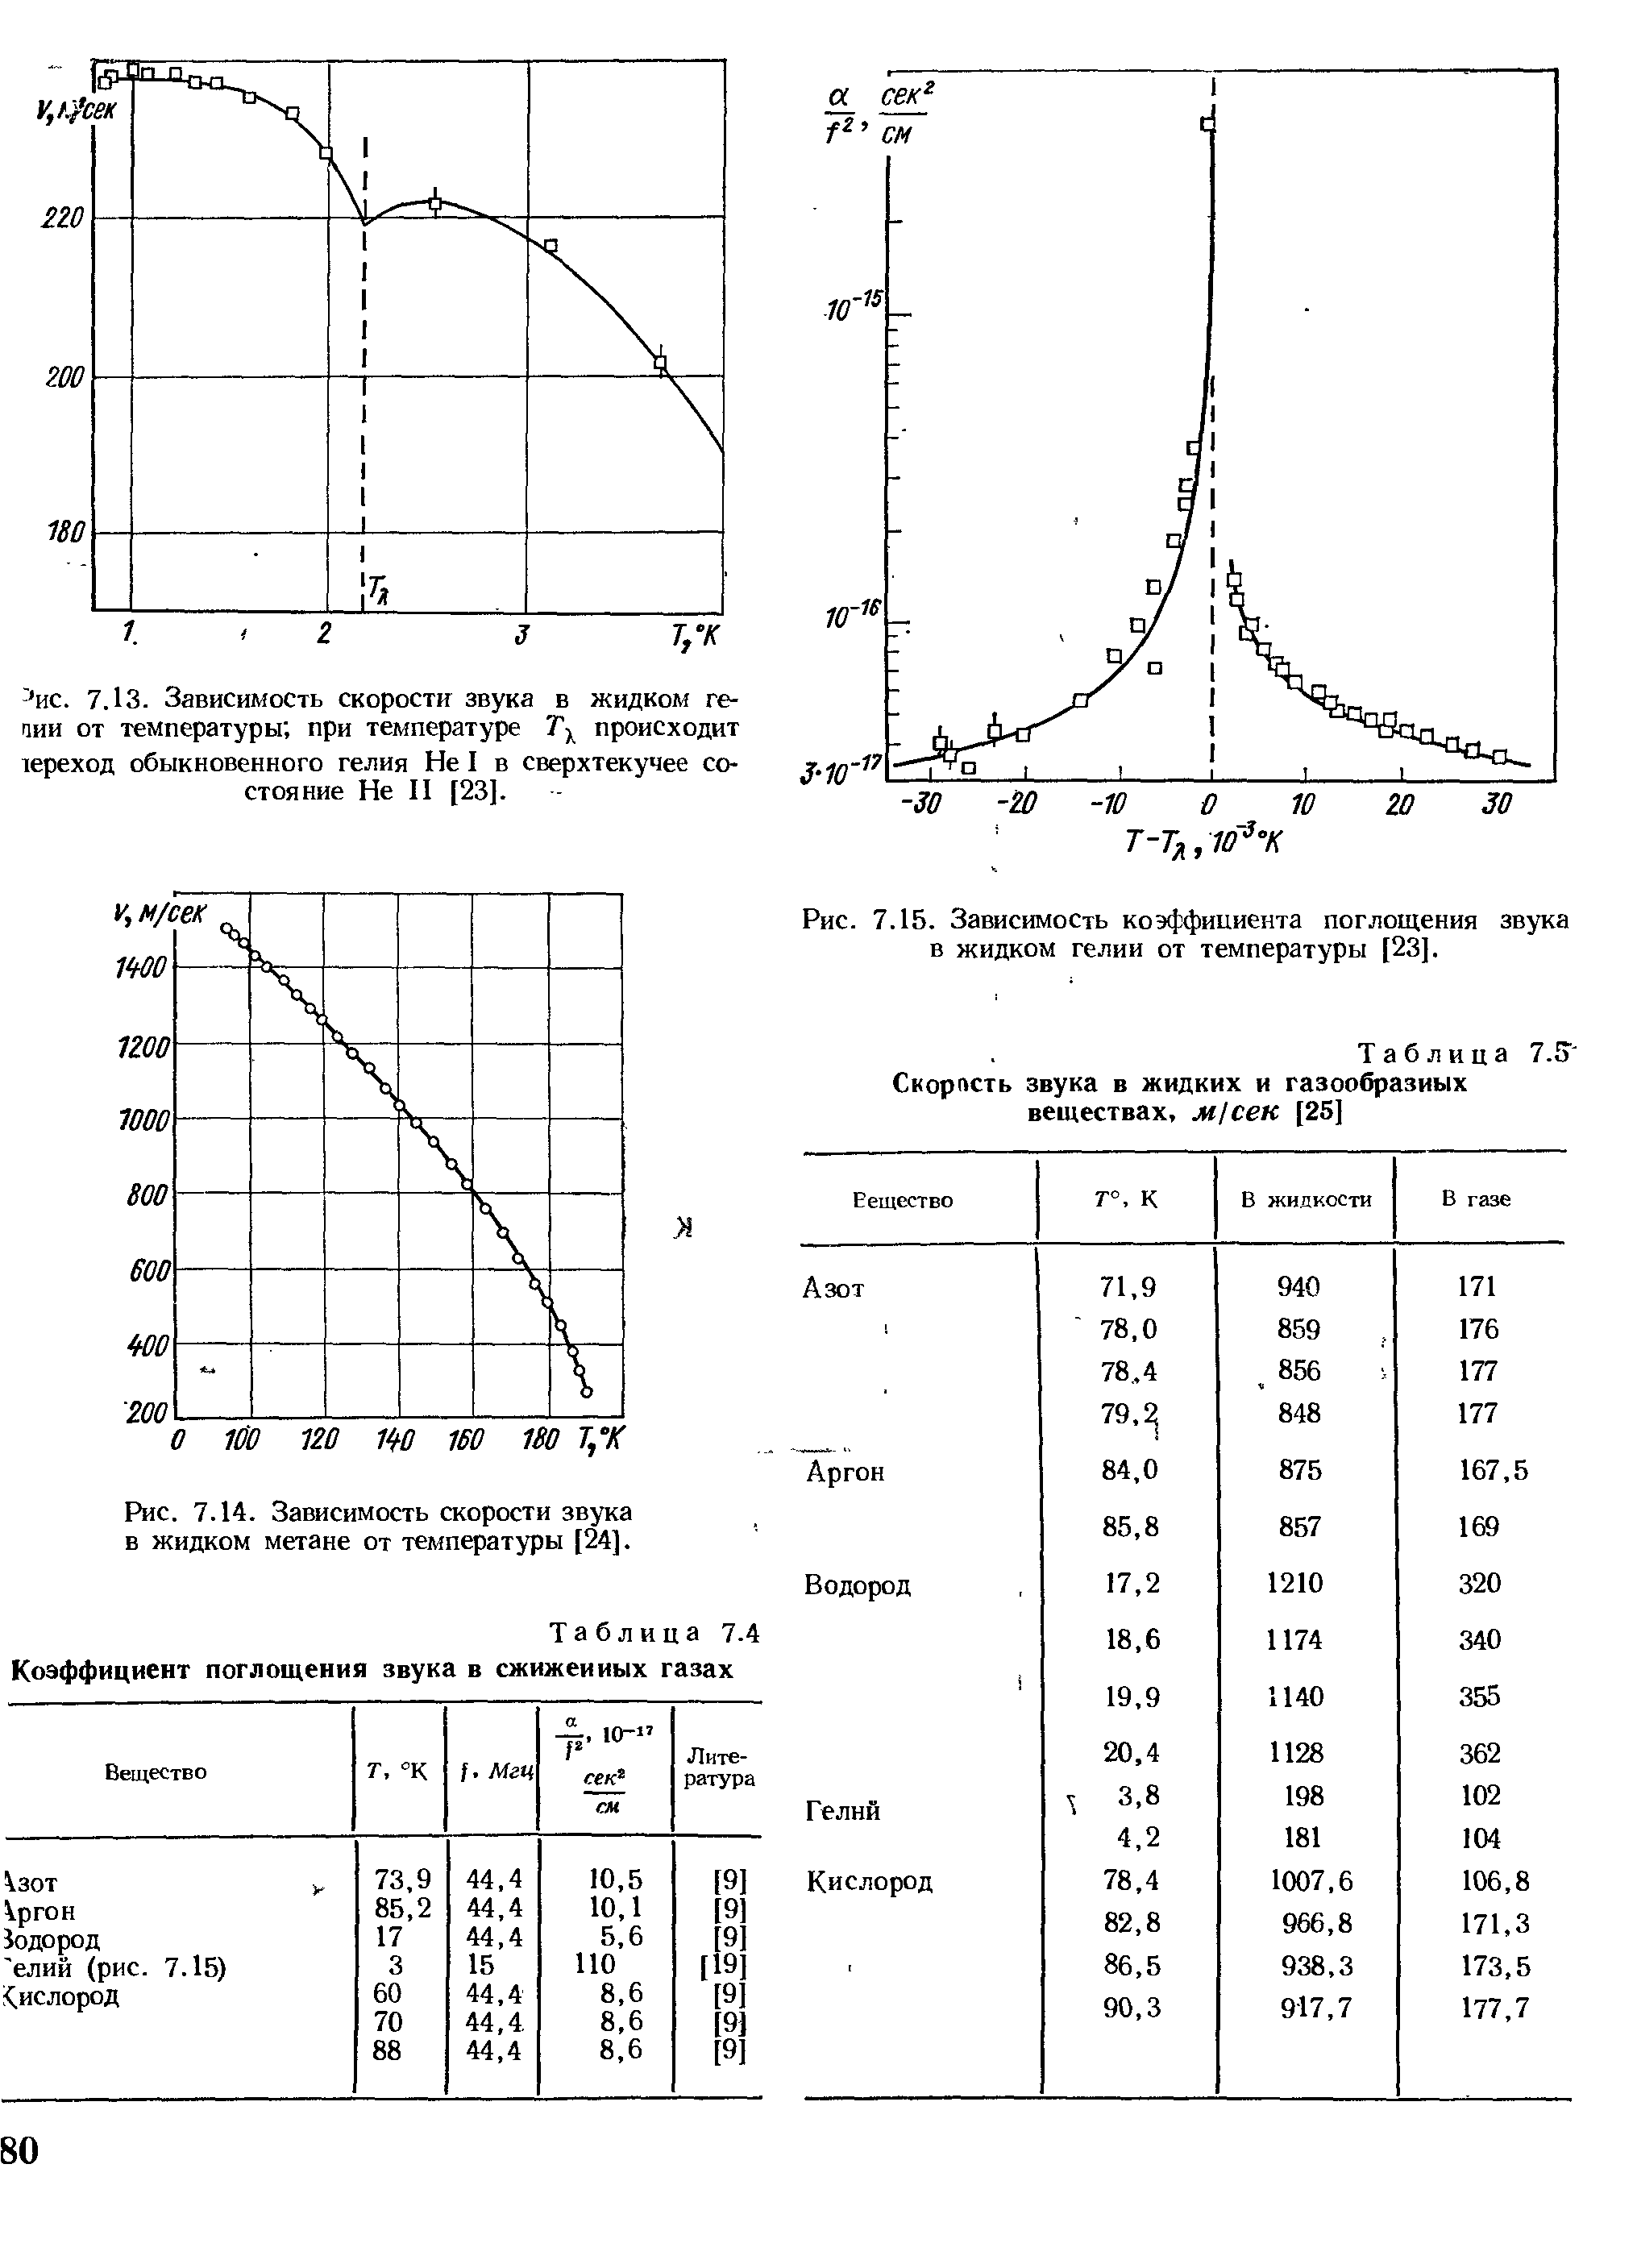 Таблица 7.4 <a href="/info/19435">Коэффициент поглощения звука</a> в сжижеииых газах
